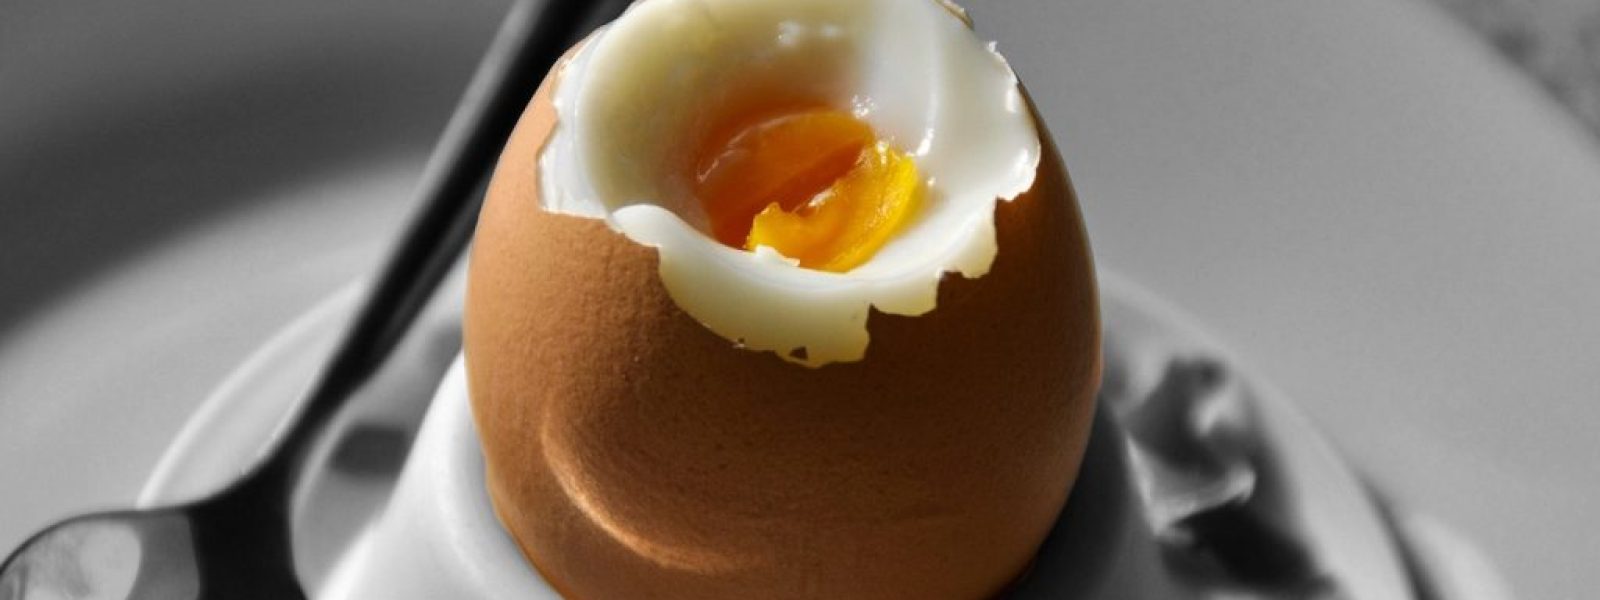 Ouăle – de ce TREBUIE să le includeţi în meniu chiar dacă aveţi probleme cardiovasculare